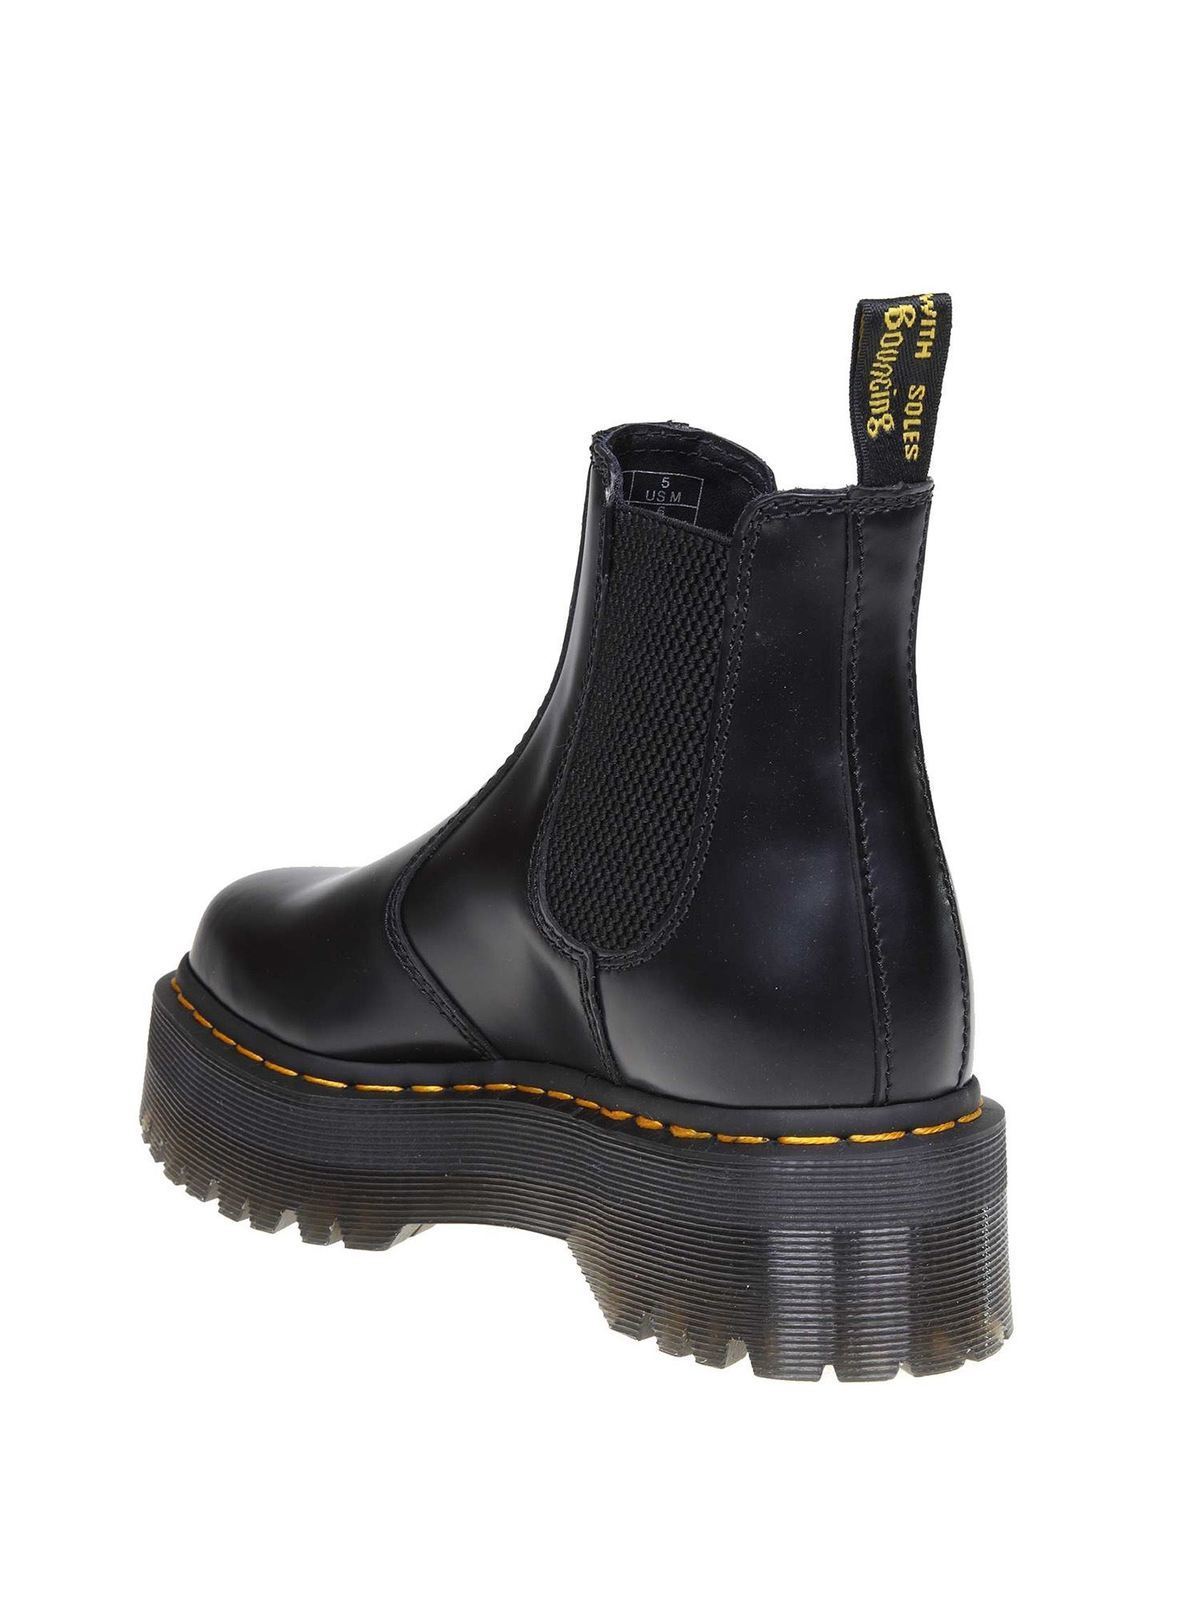 Shop Dr. Martens' Black 2976 Quad Ankle Boots